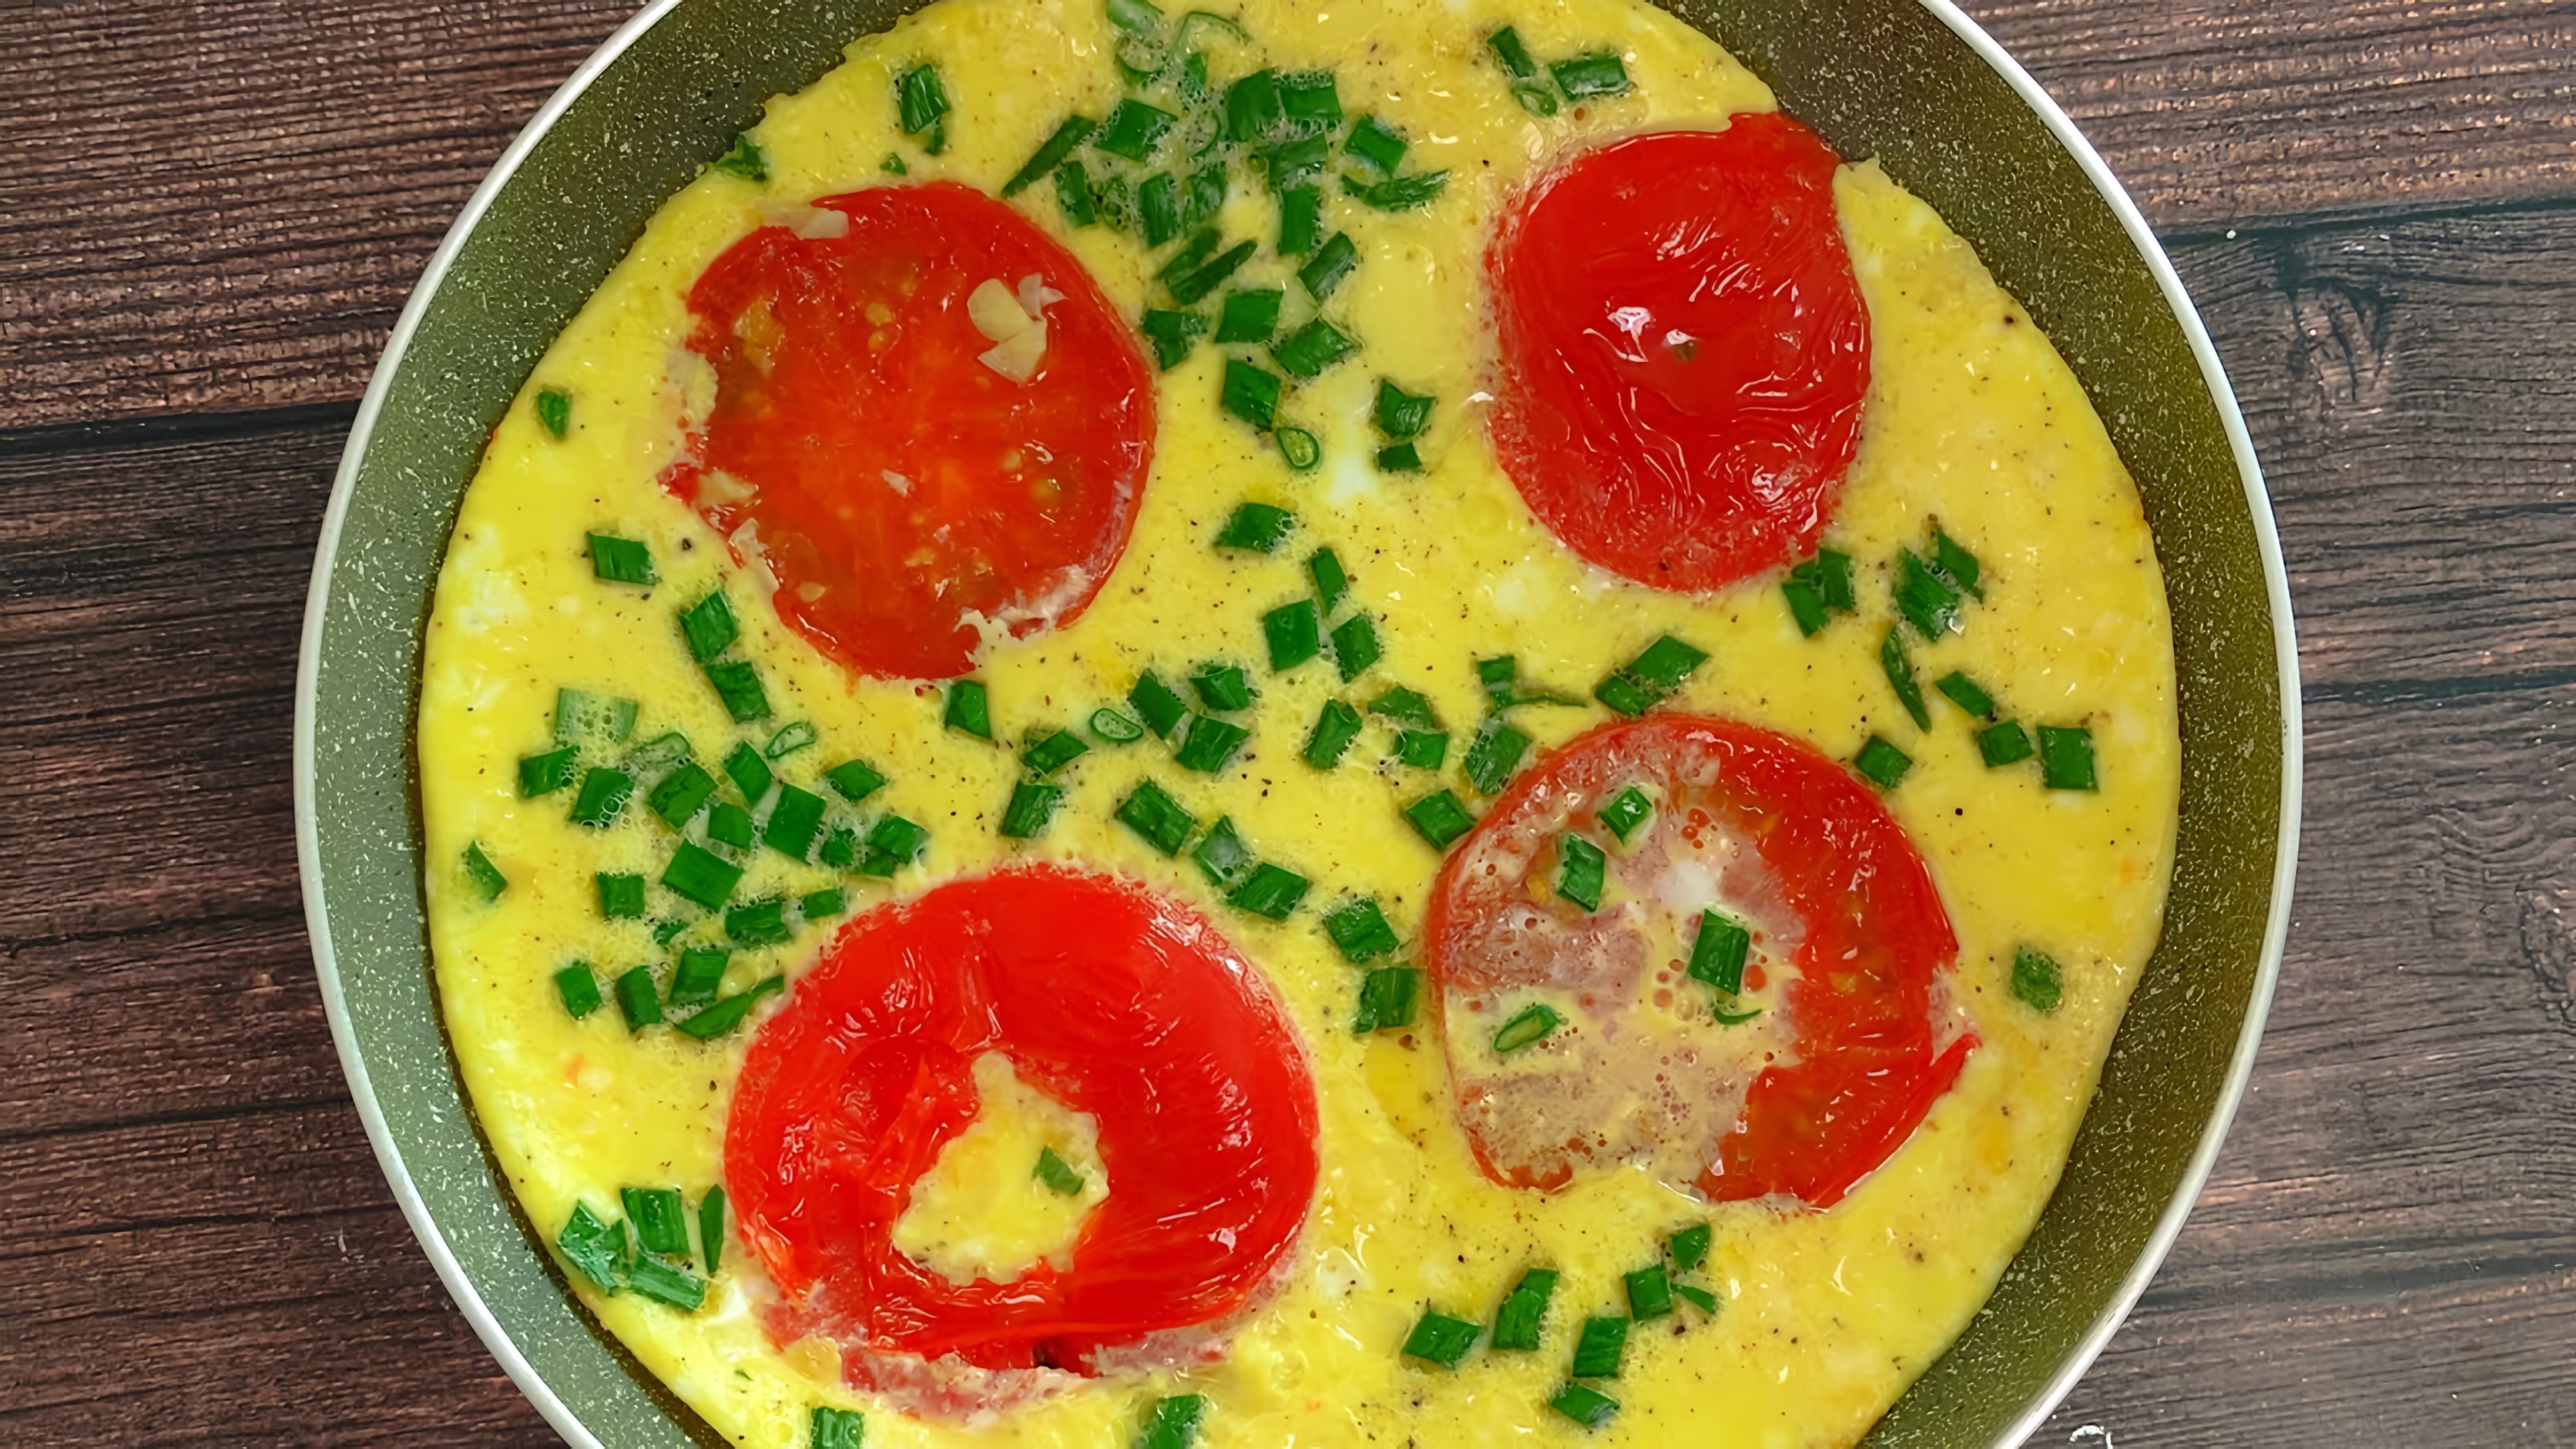 Вкусный быстрый завтрак на сковороде 1 помидор 3 яйца 3-4ст. л. молока(можно больше) 4-5пера зелёного лука соль, ... 